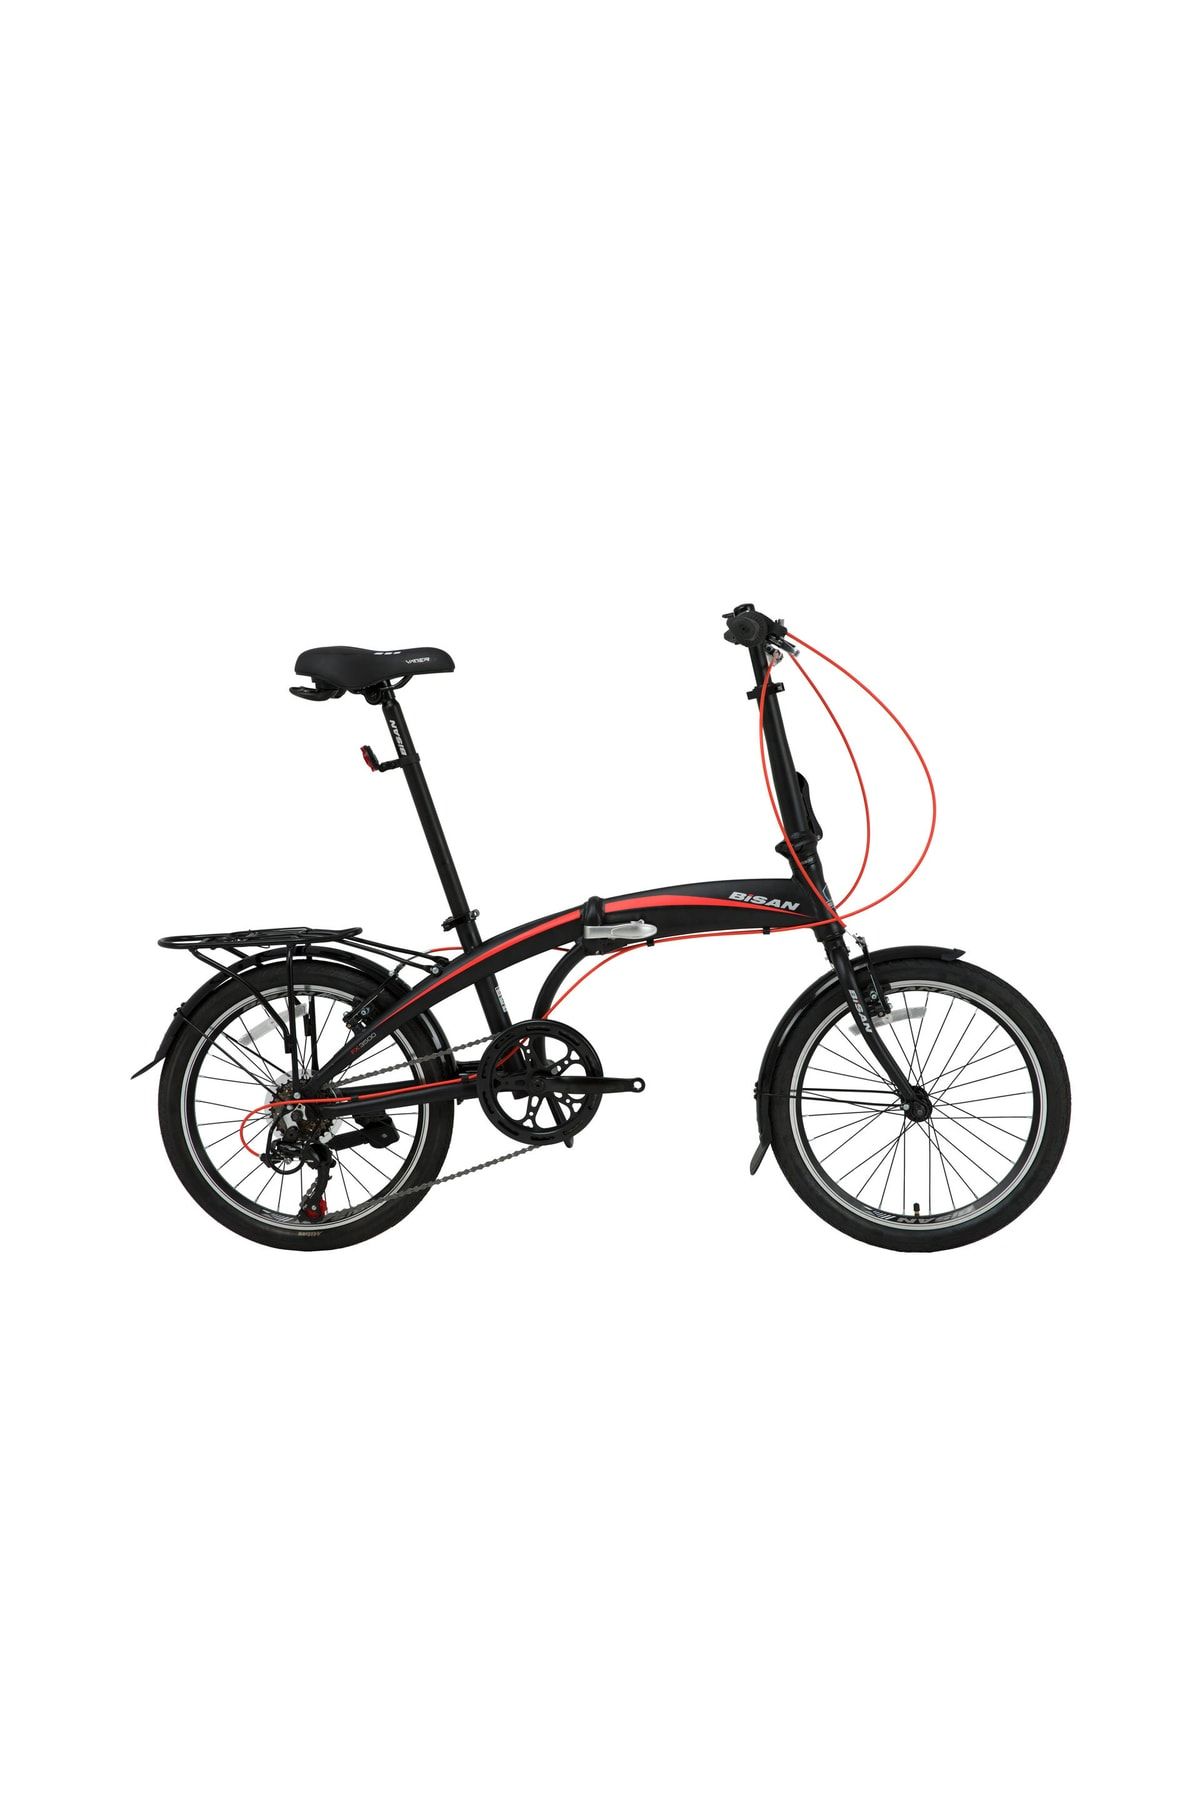 Bisan Fx 3500-trn Katlanır Bisiklet 280cm V 20 Jant 7 Vites - Siyah Kırmızı Renk